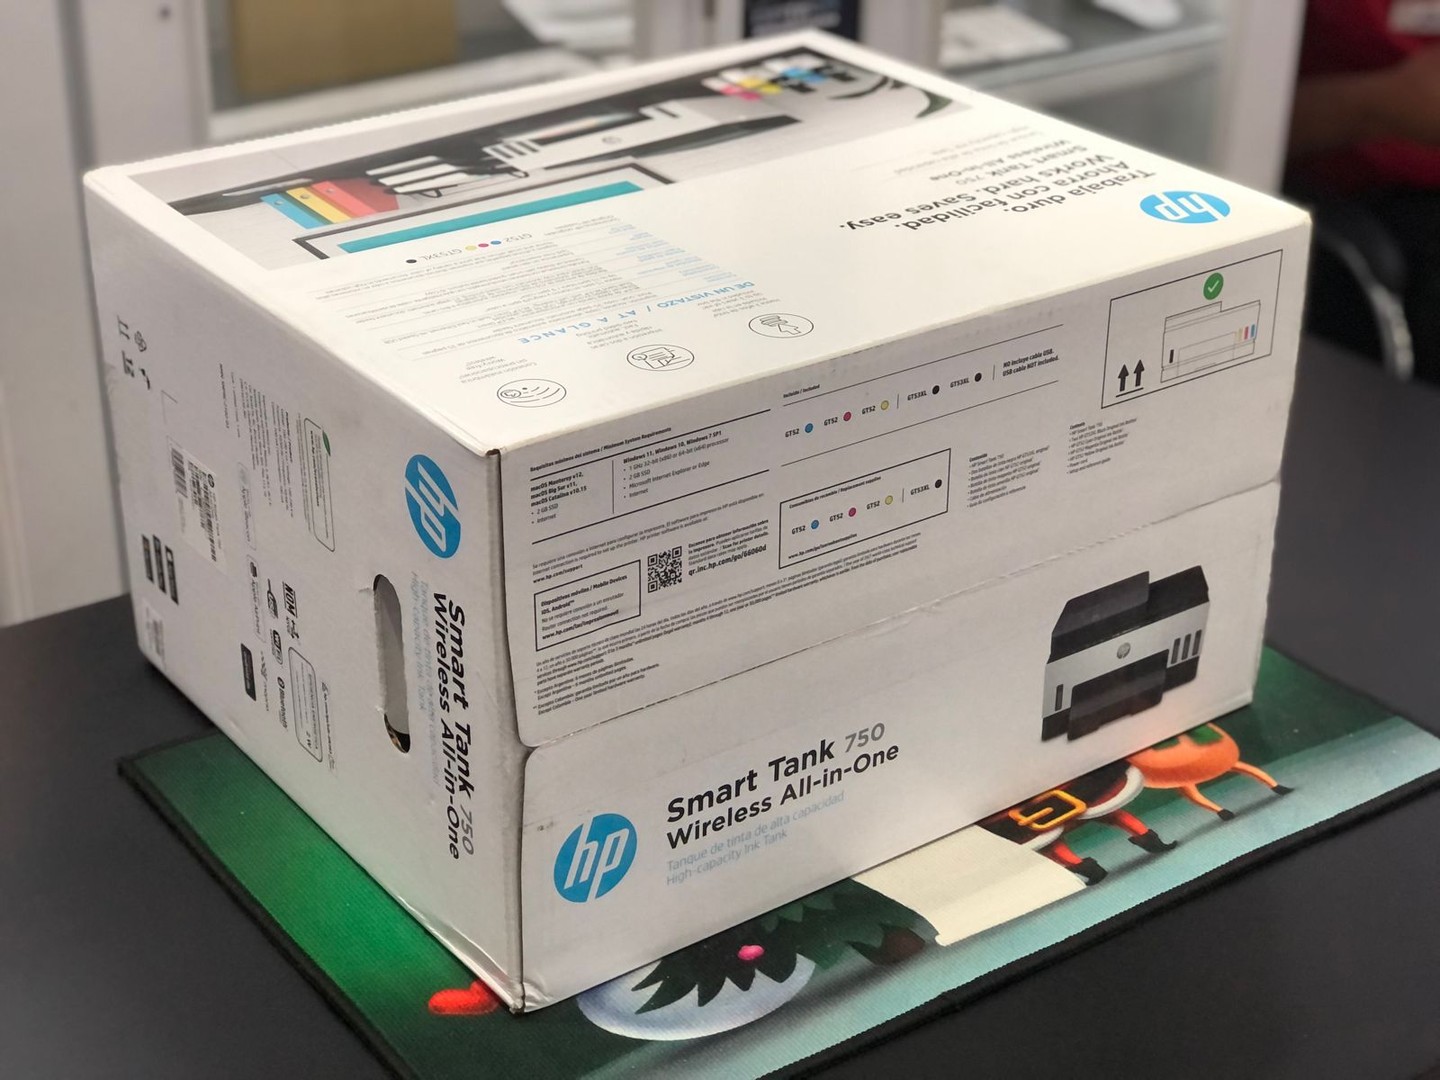 impresoras y scanners - Impresora HP 750 ADF Para Copia de Hoja Legal Nueva y Selalda Wifi, Multifuncion 6